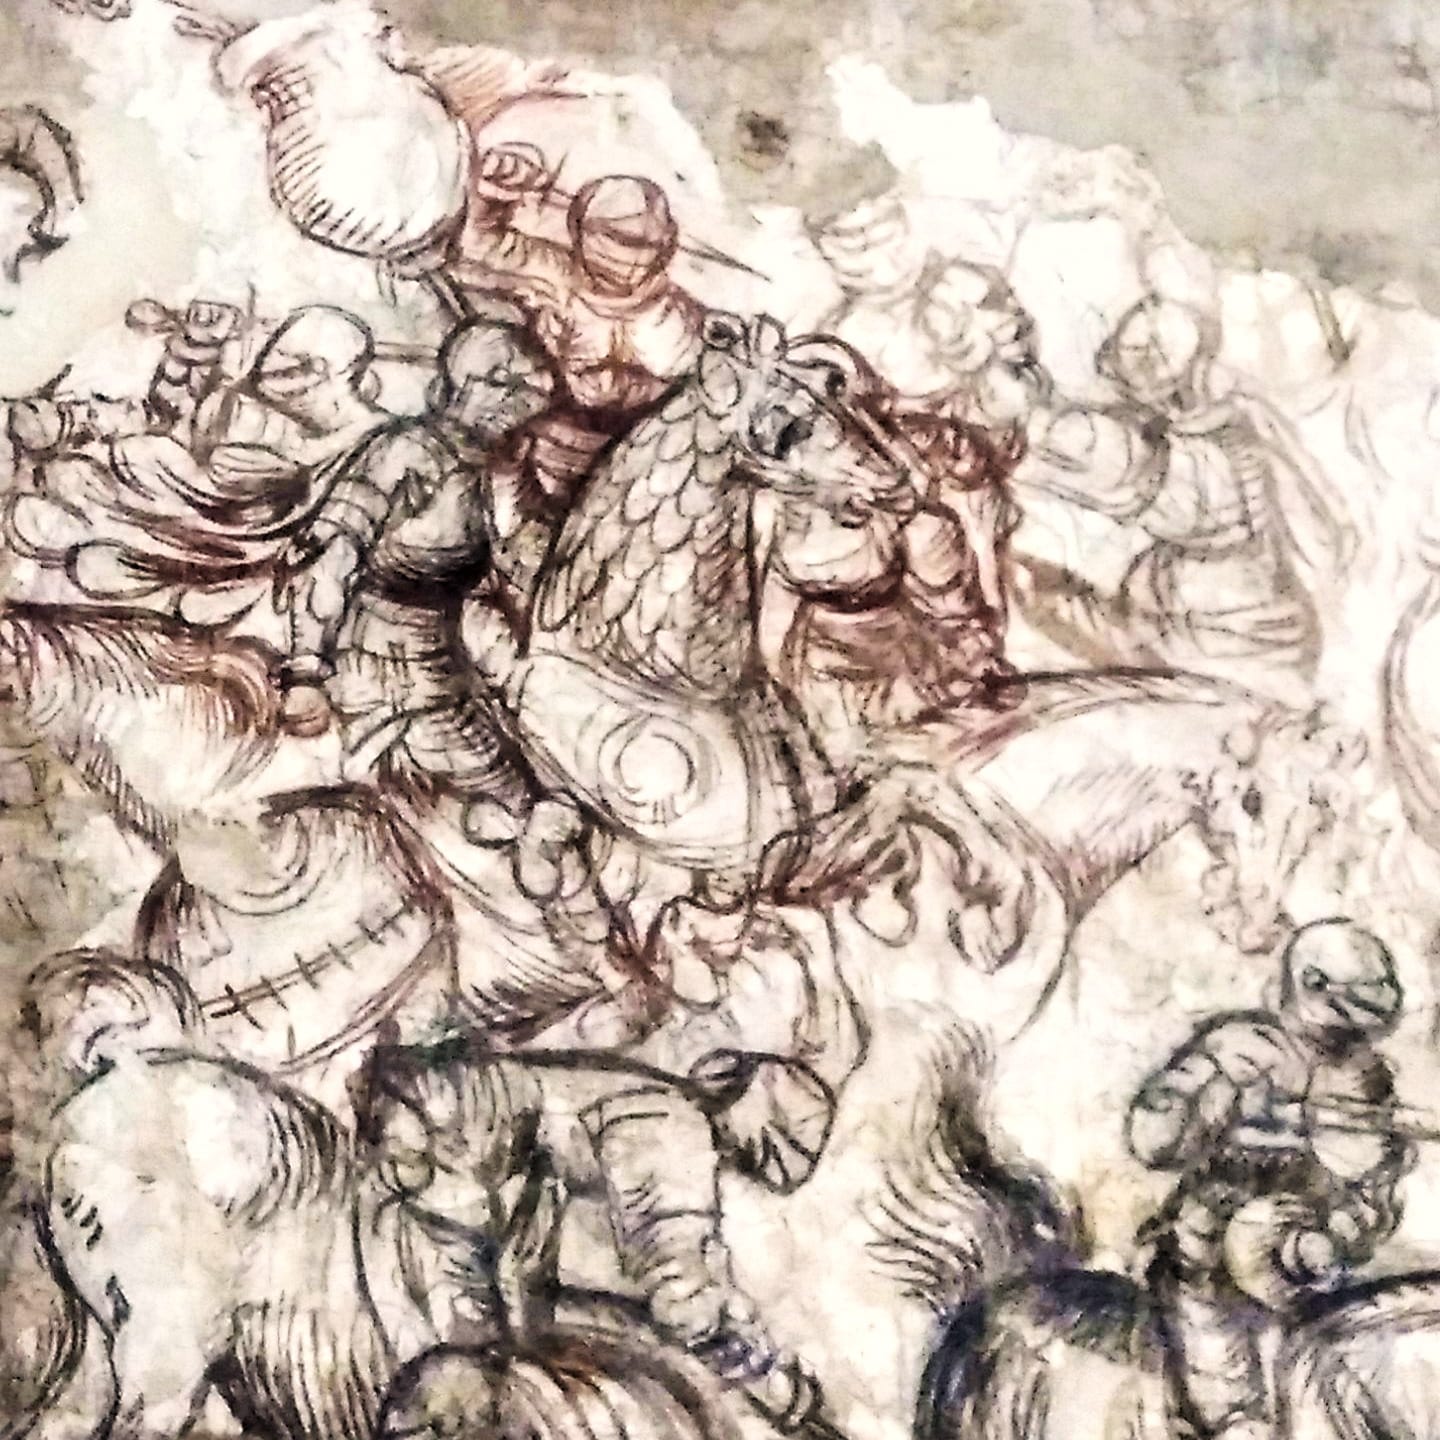 Antonio di Puccio Pisano detto il Pisanello (1395 c.a-1455), “Torneo-battaglia di Louvezerp”, 1436/1444, sinopia di affresco (particolare). Mantova (Lombardia – Italia), Palazzo Ducale, Corte Vecchia